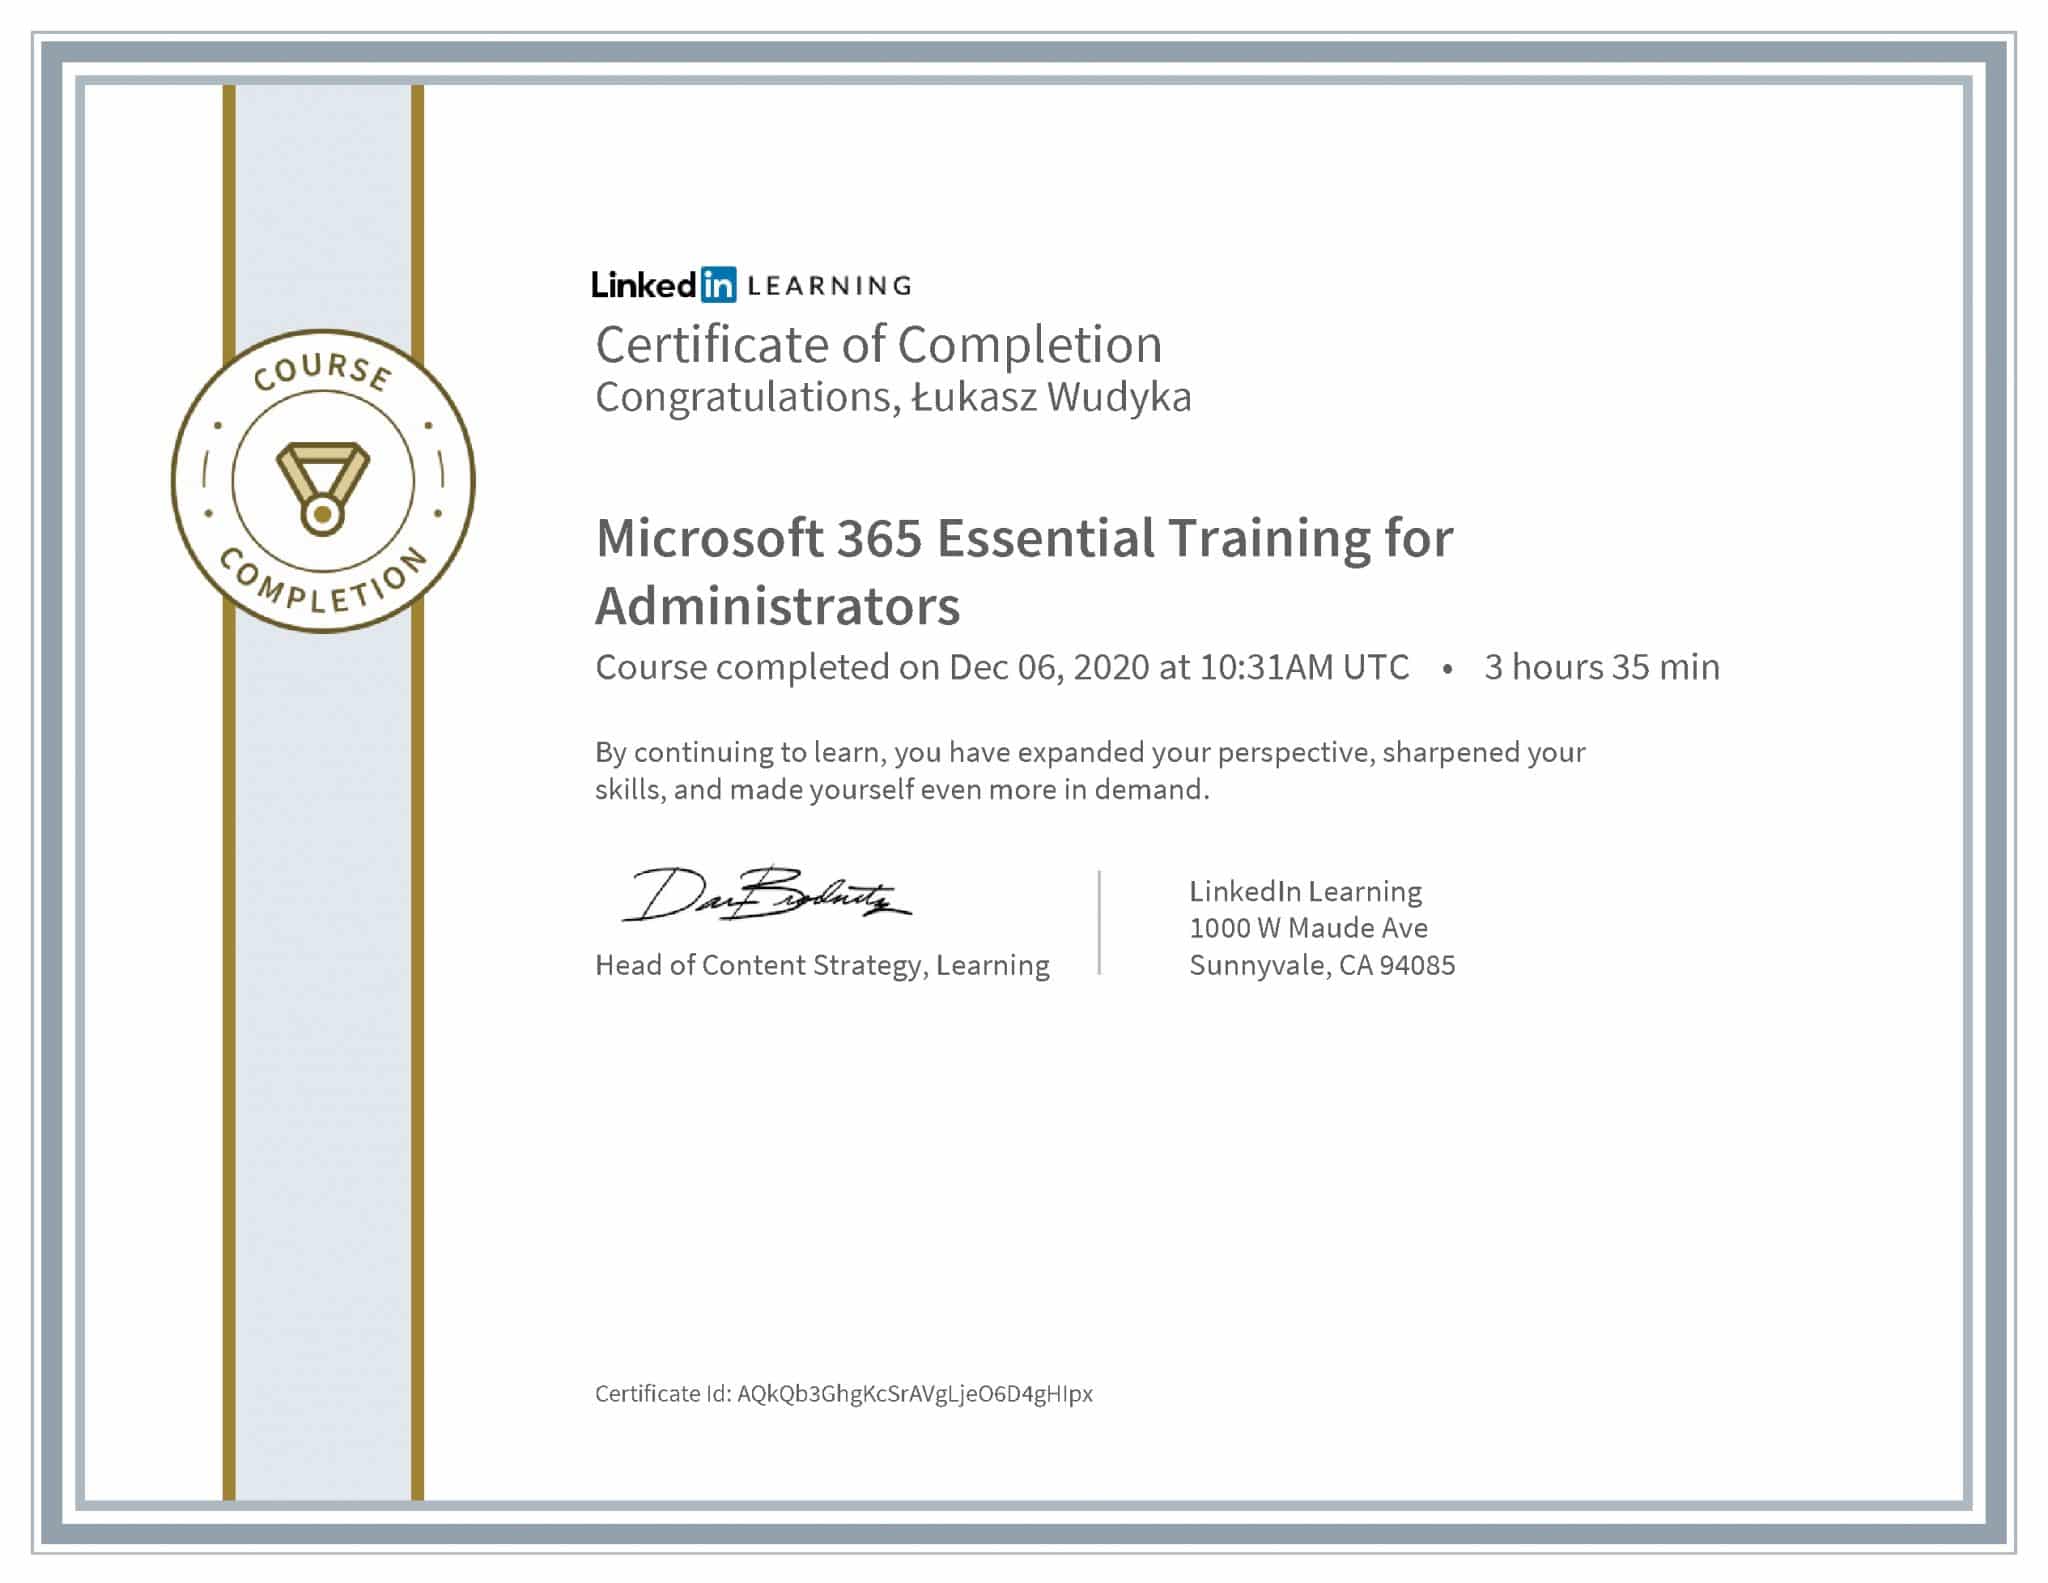 Łukasz Wudyka certyfikat LinkedIn Microsoft 365 Essential Training for Administrators